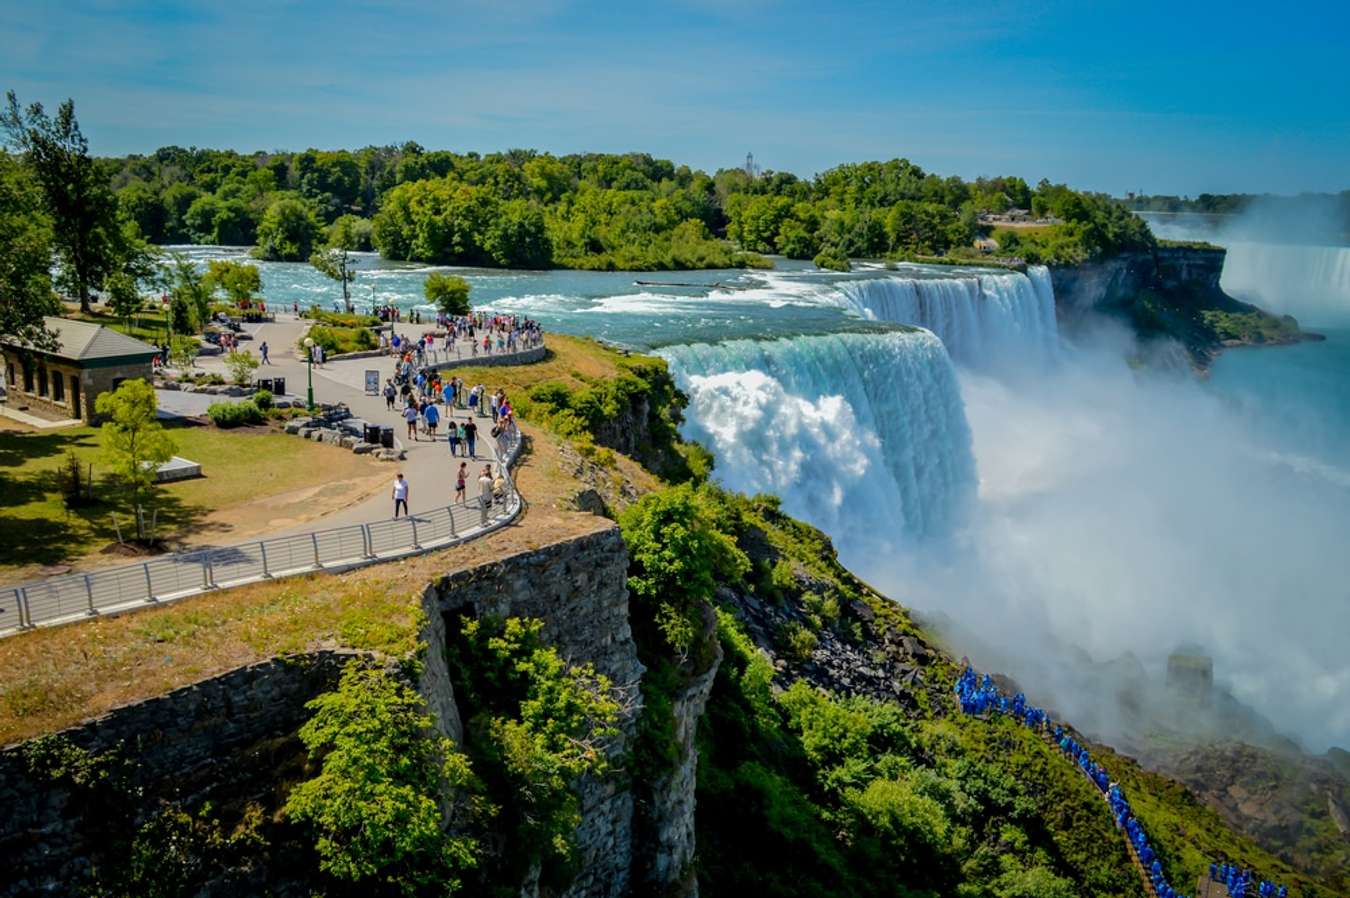 Thác Niagara là một trong những điểm du lịch nổi tiếng và đẹp nhất của Mỹ, với vẻ đẹp kỳ vĩ của tảng đá đại dương và dòng nước chảy xiết. Nếu bạn muốn tận hưởng và khám phá nét đẹp độc đáo của nơi này, hãy ghé thăm hình ảnh liên quan để thôi nôi đam mê du lịch của mình nhé.